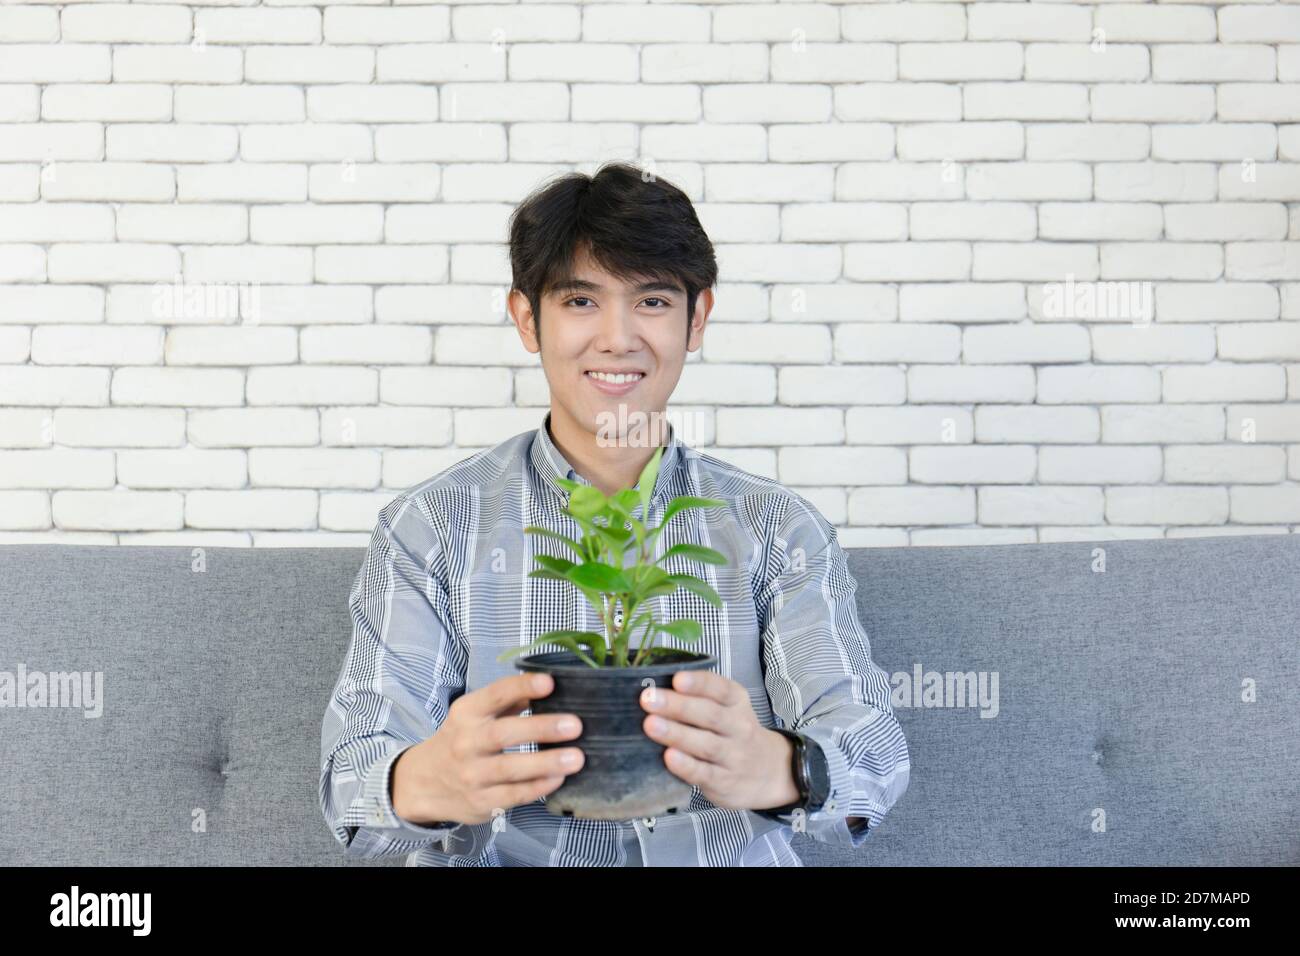 Ein junger asiatischer Mann hält einen Pflanztopf und lächelt hell. Stockfoto